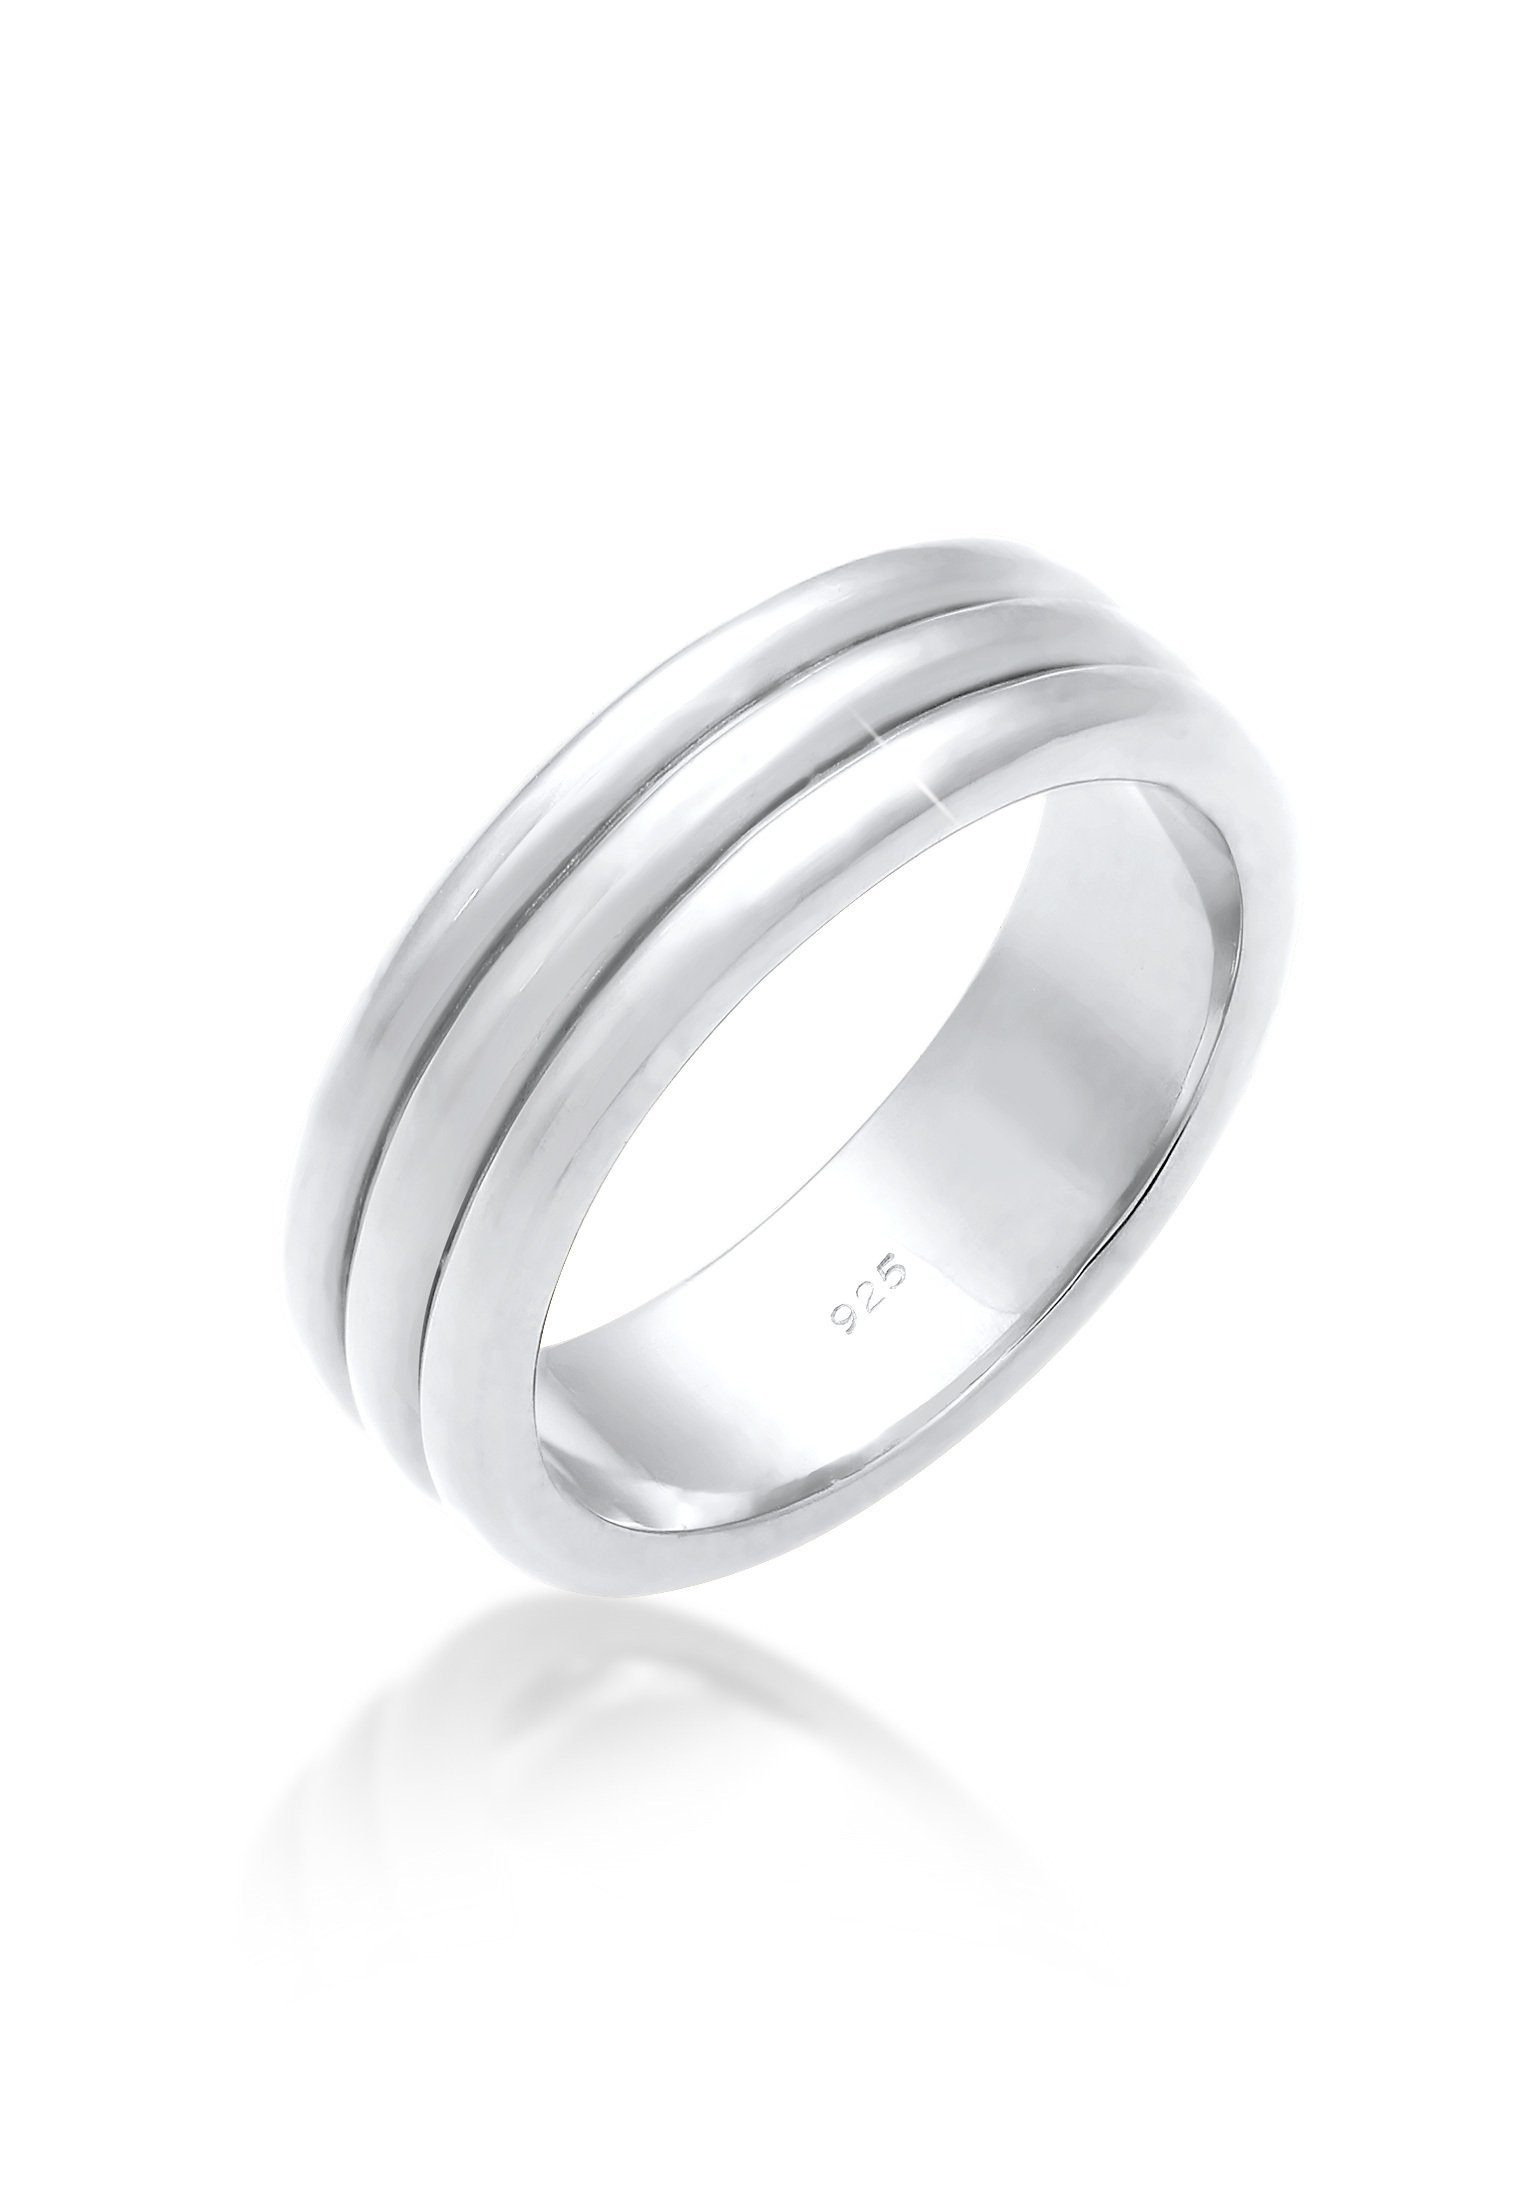 Elli Premium Partnerring Paarring Drei Ringe Trauring Hochzeit 925 Silber